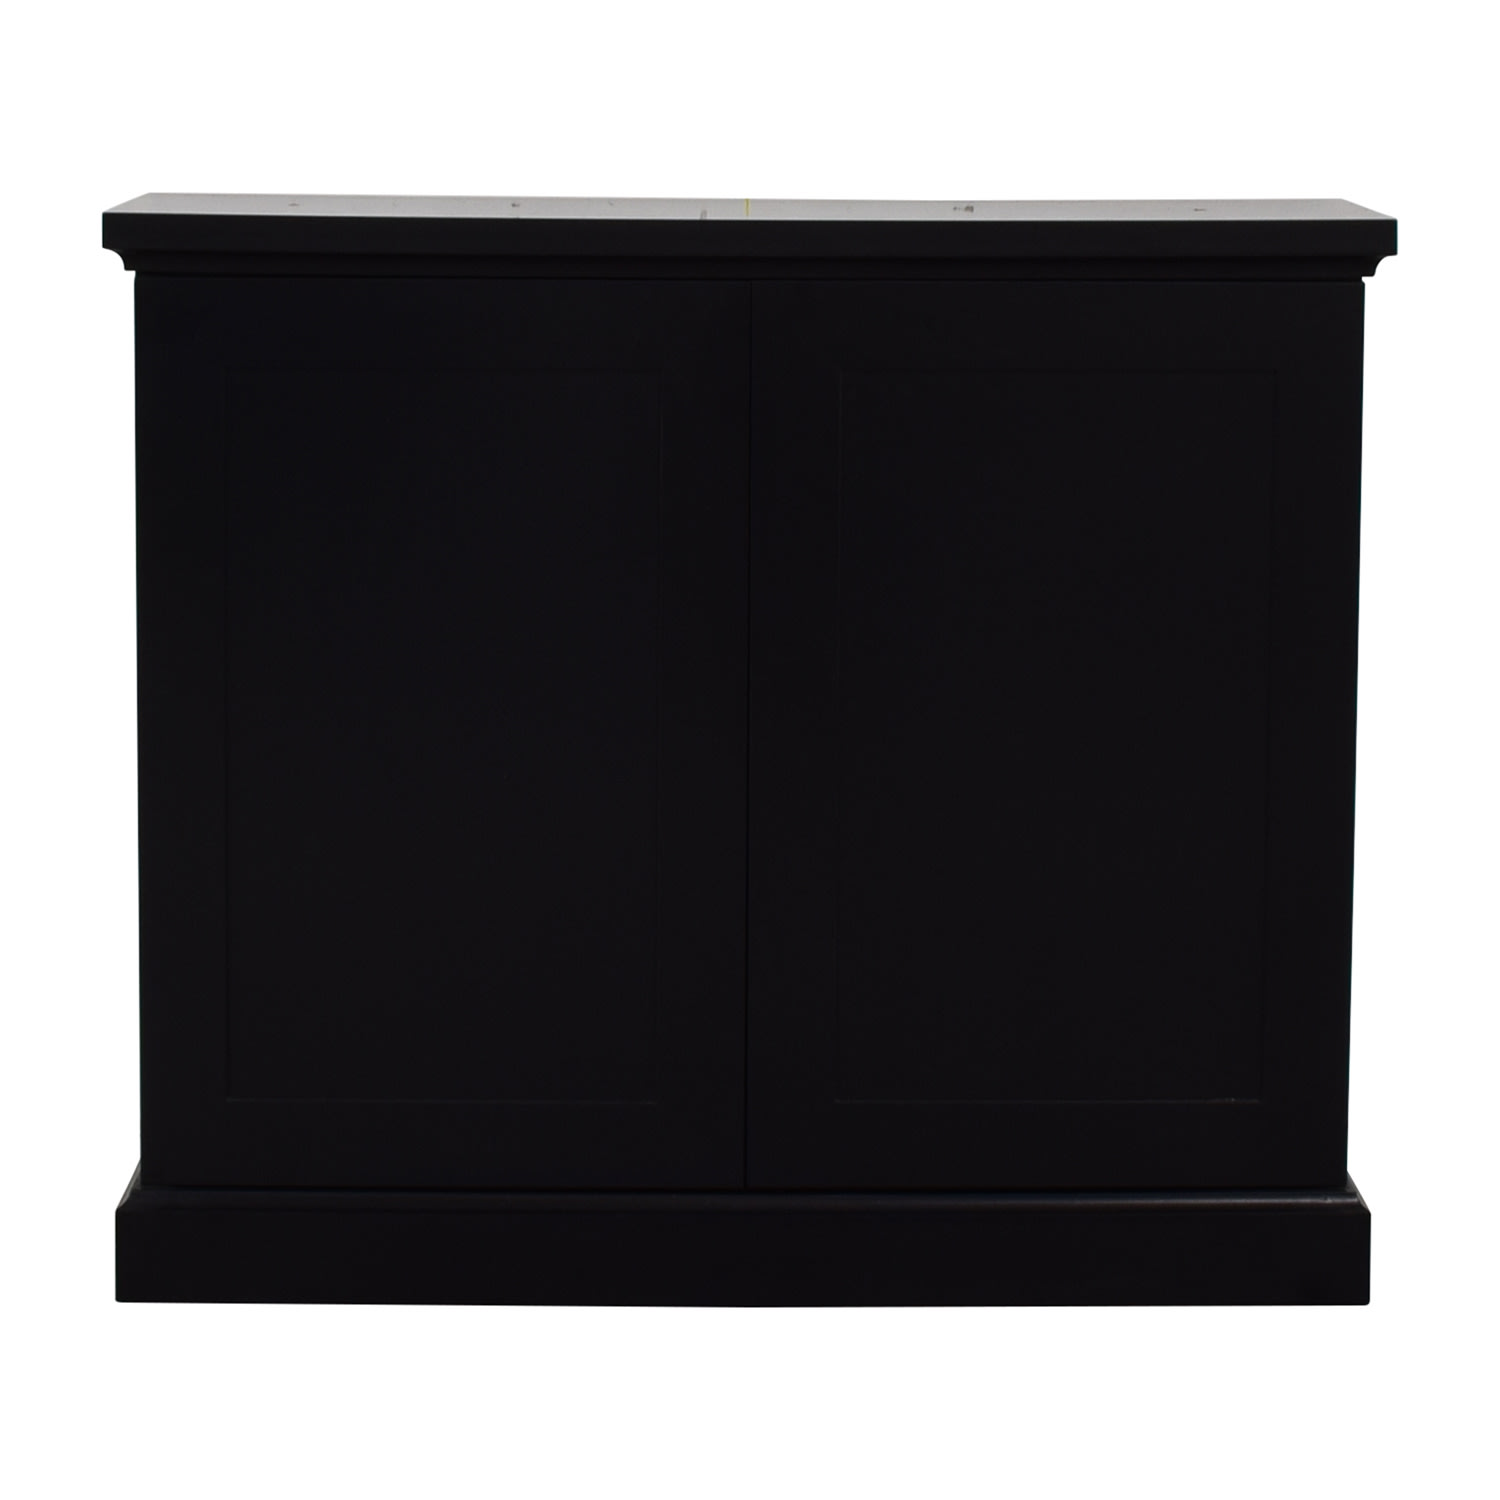  Black Ebonized Wood Two-Door Cabinet on sale